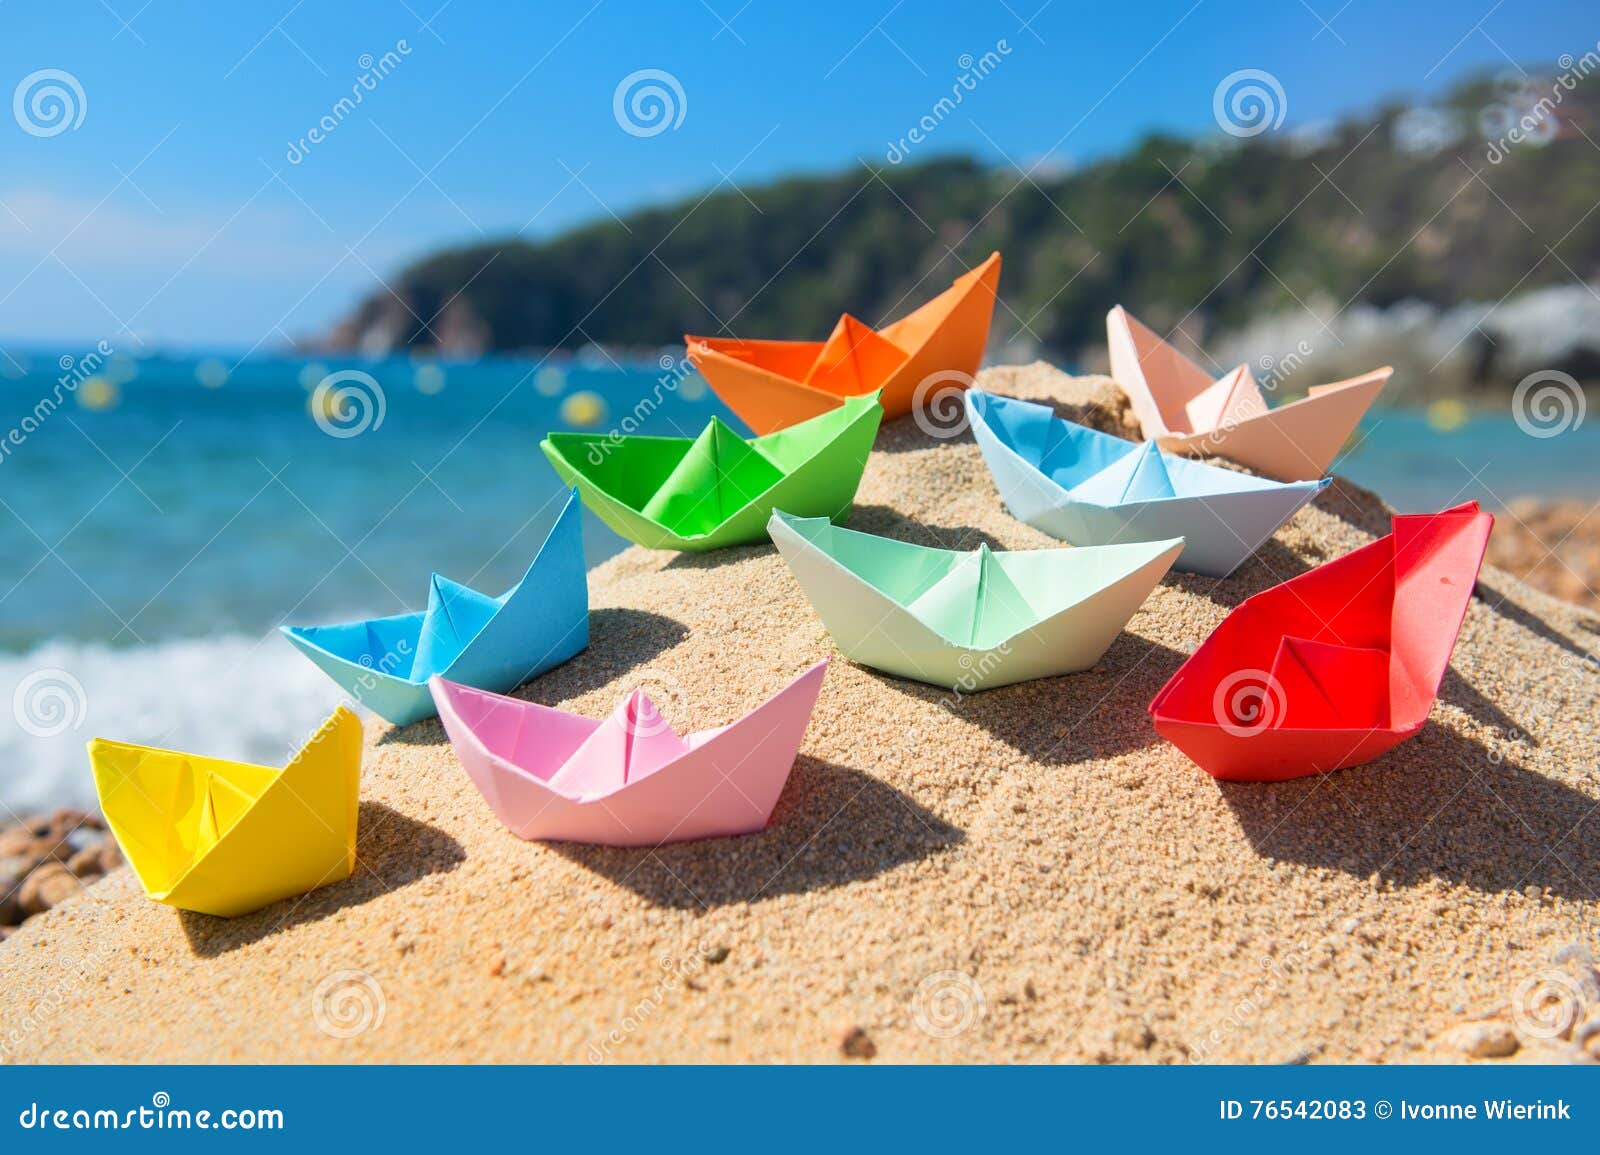 Бумажные кораблики картинки. Бумажный кораблик. Бумажный кораблик в море. Много бумажных корабликов. Разноцветные бумажные кораблики.